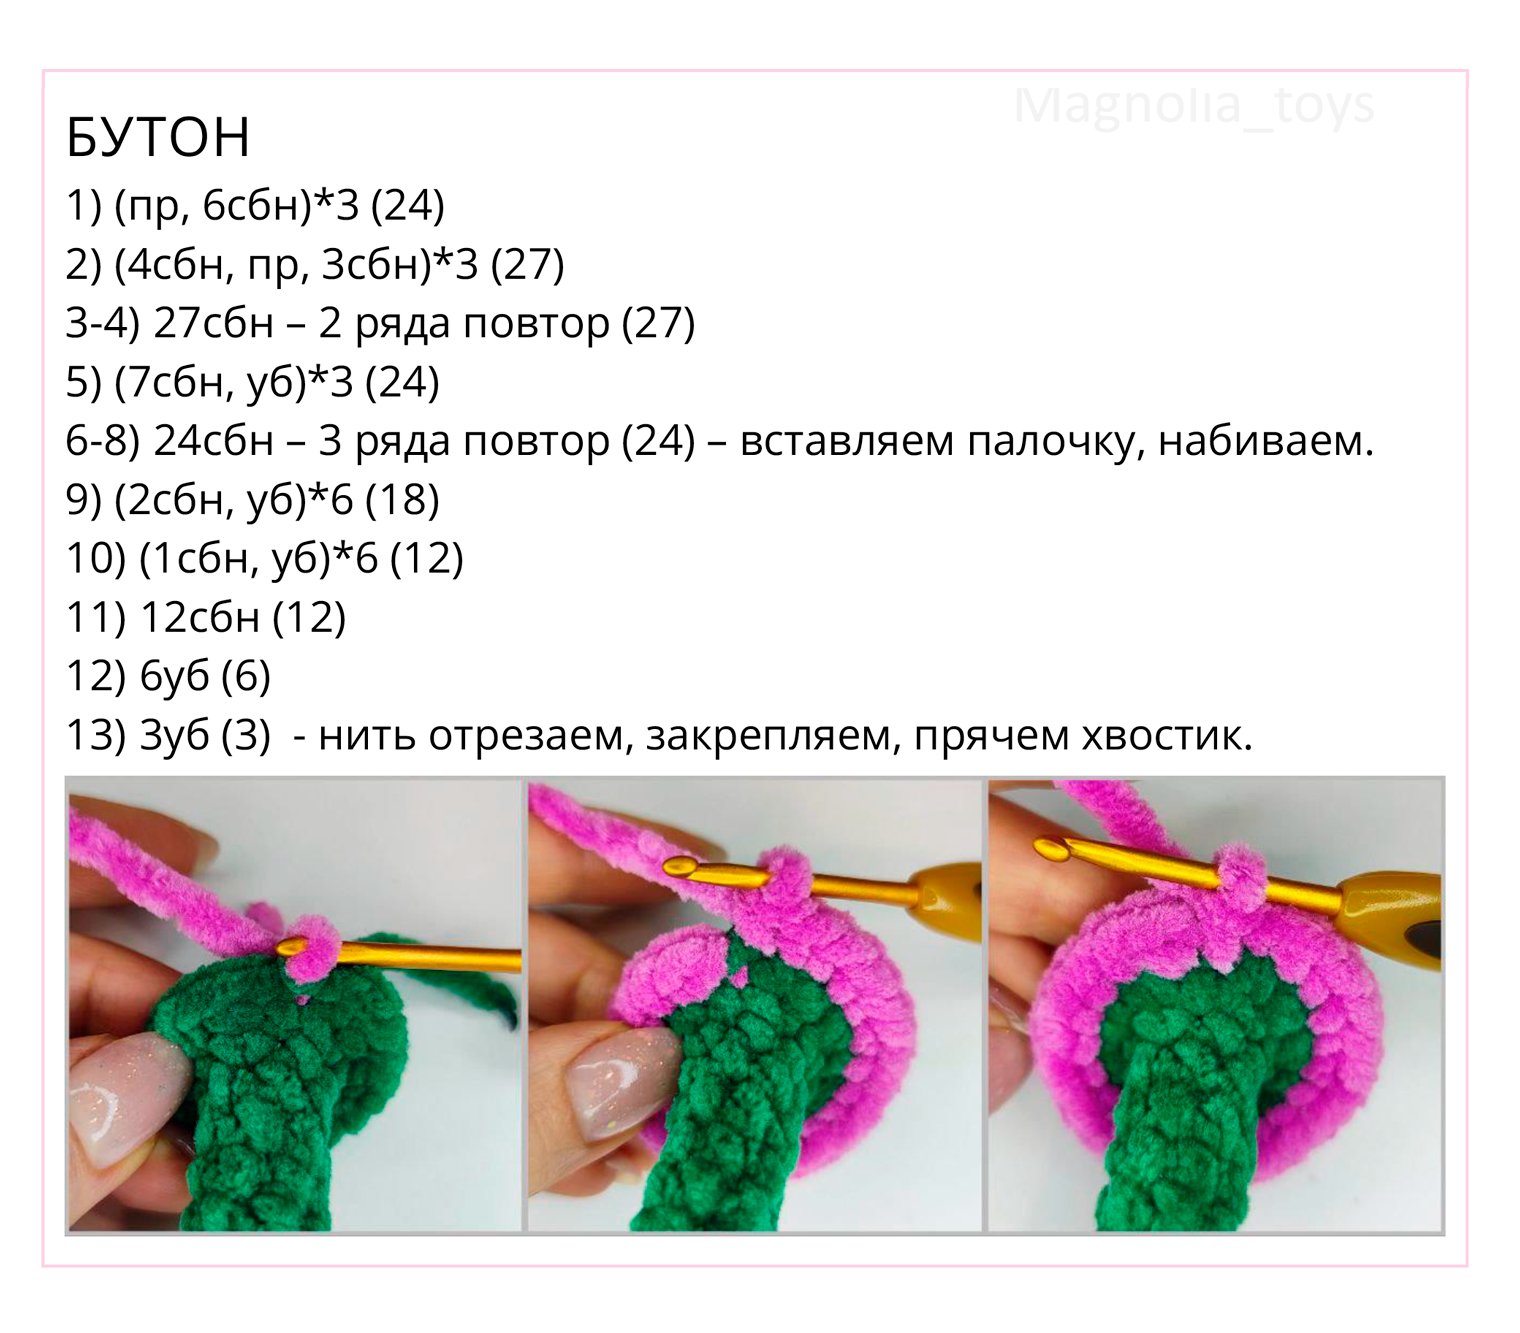 Мастер-класс по вязанию тюльпанов. Источник: umelki.online